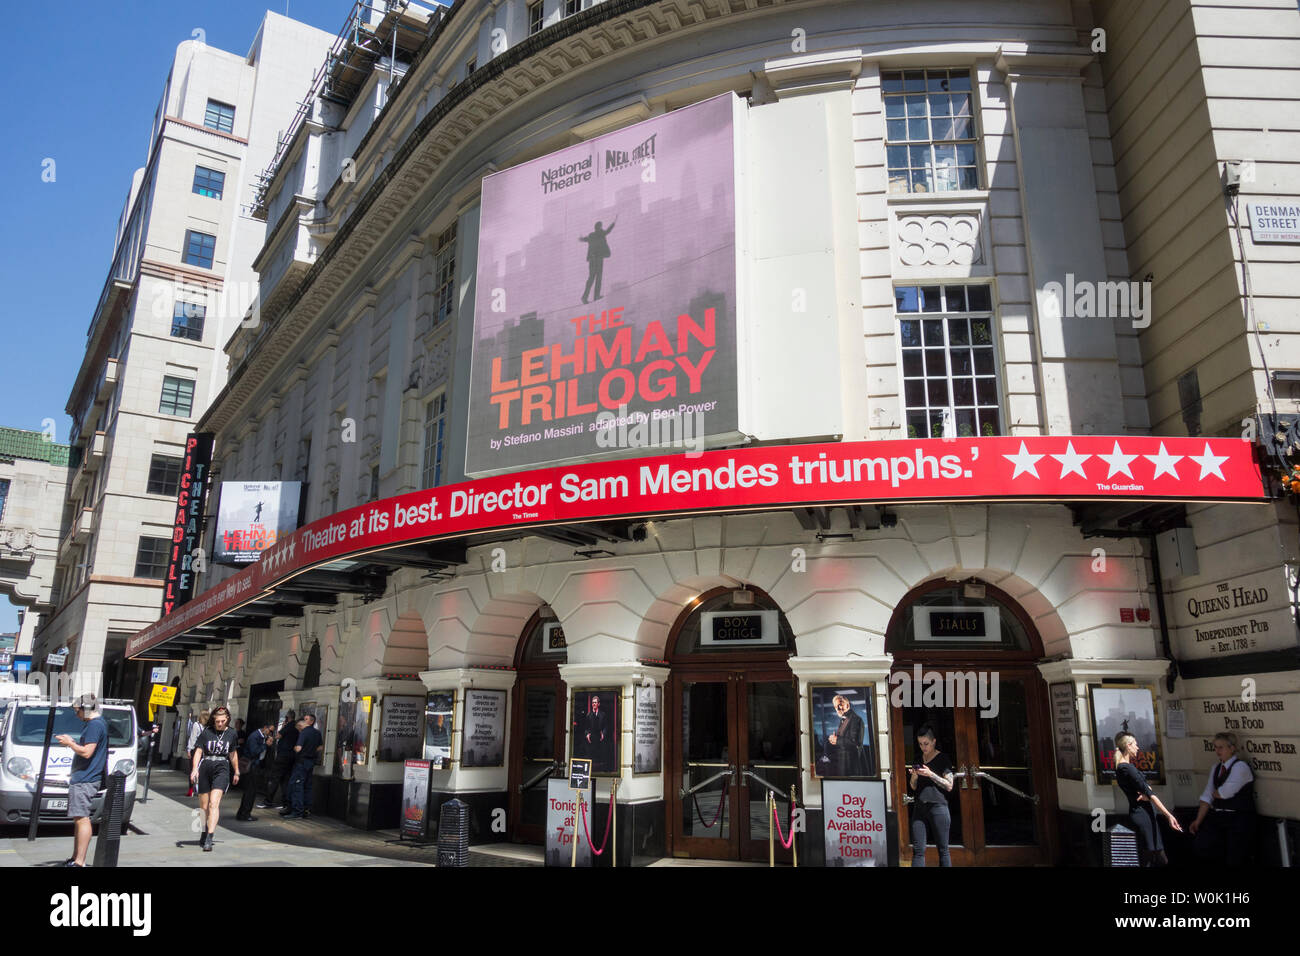 Stefano Massini est la trilogie Lehman au Piccadilly Theatre réalisé par Sam Mendes Banque D'Images